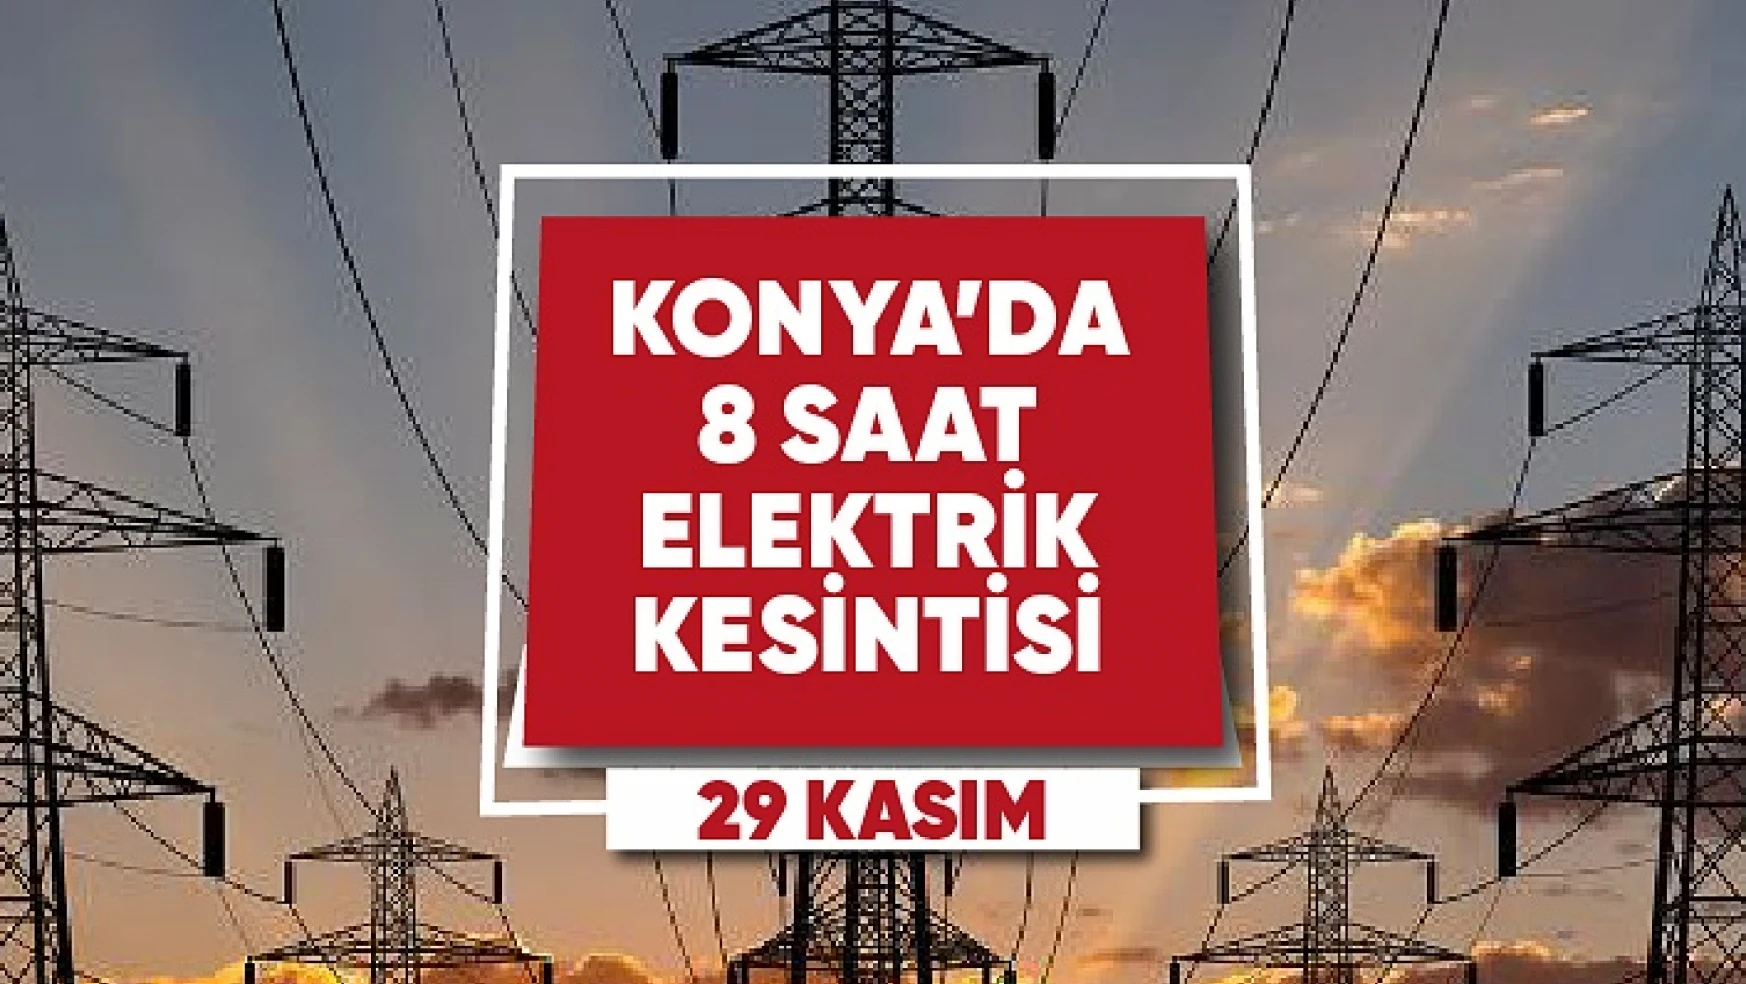 29 Kasım Konya'da elektrik kesintisi yaşanacak mahalle ve sokaklar